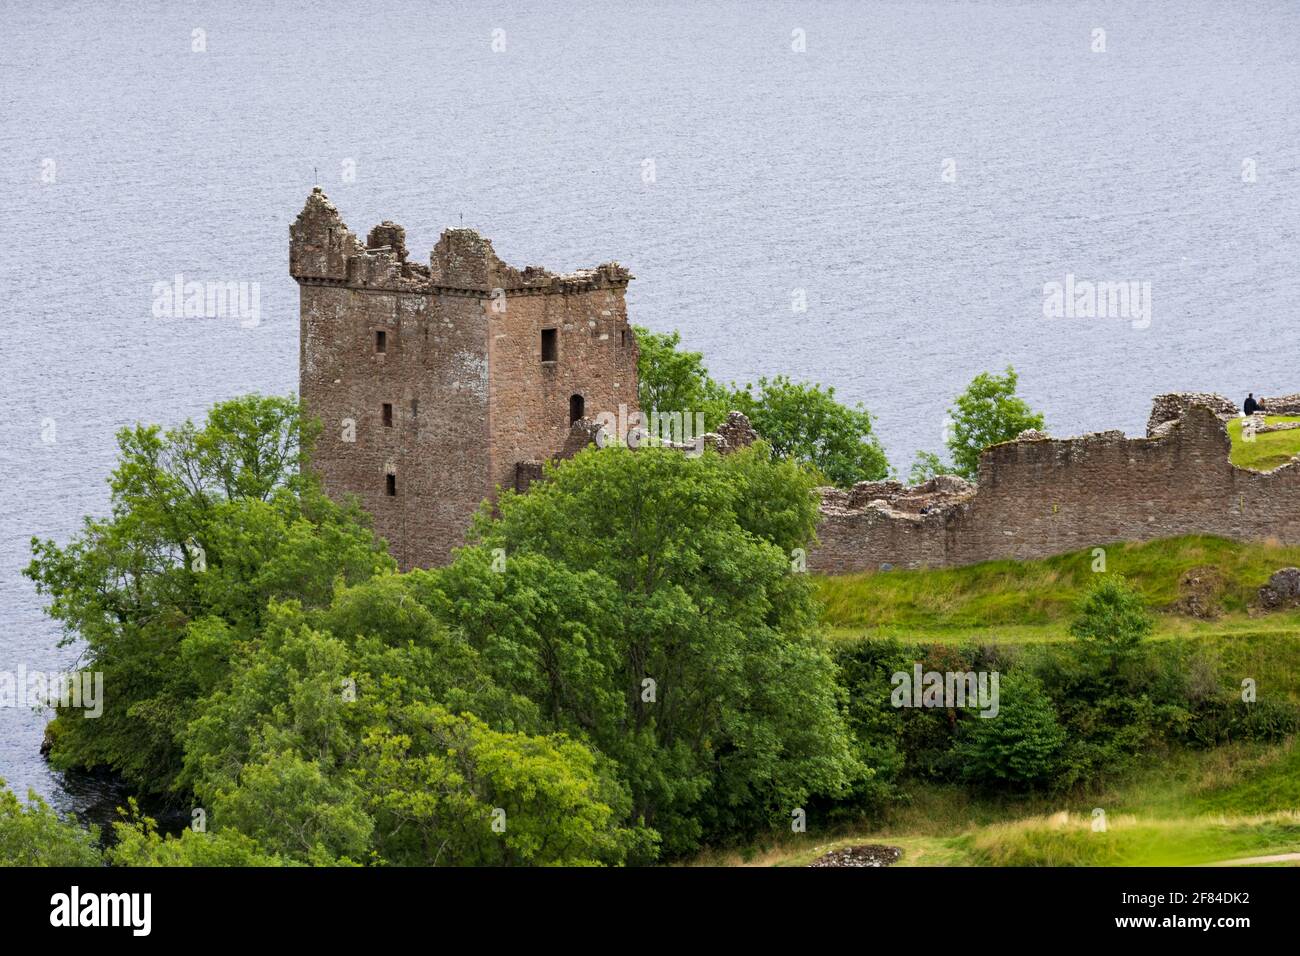 Ruine Schloss Urquhart, Urquhart Castle, am See Loch Ness bei Drumnadrochit, schottisches Hochland, Schottland, Grossbritannien Stock Photo